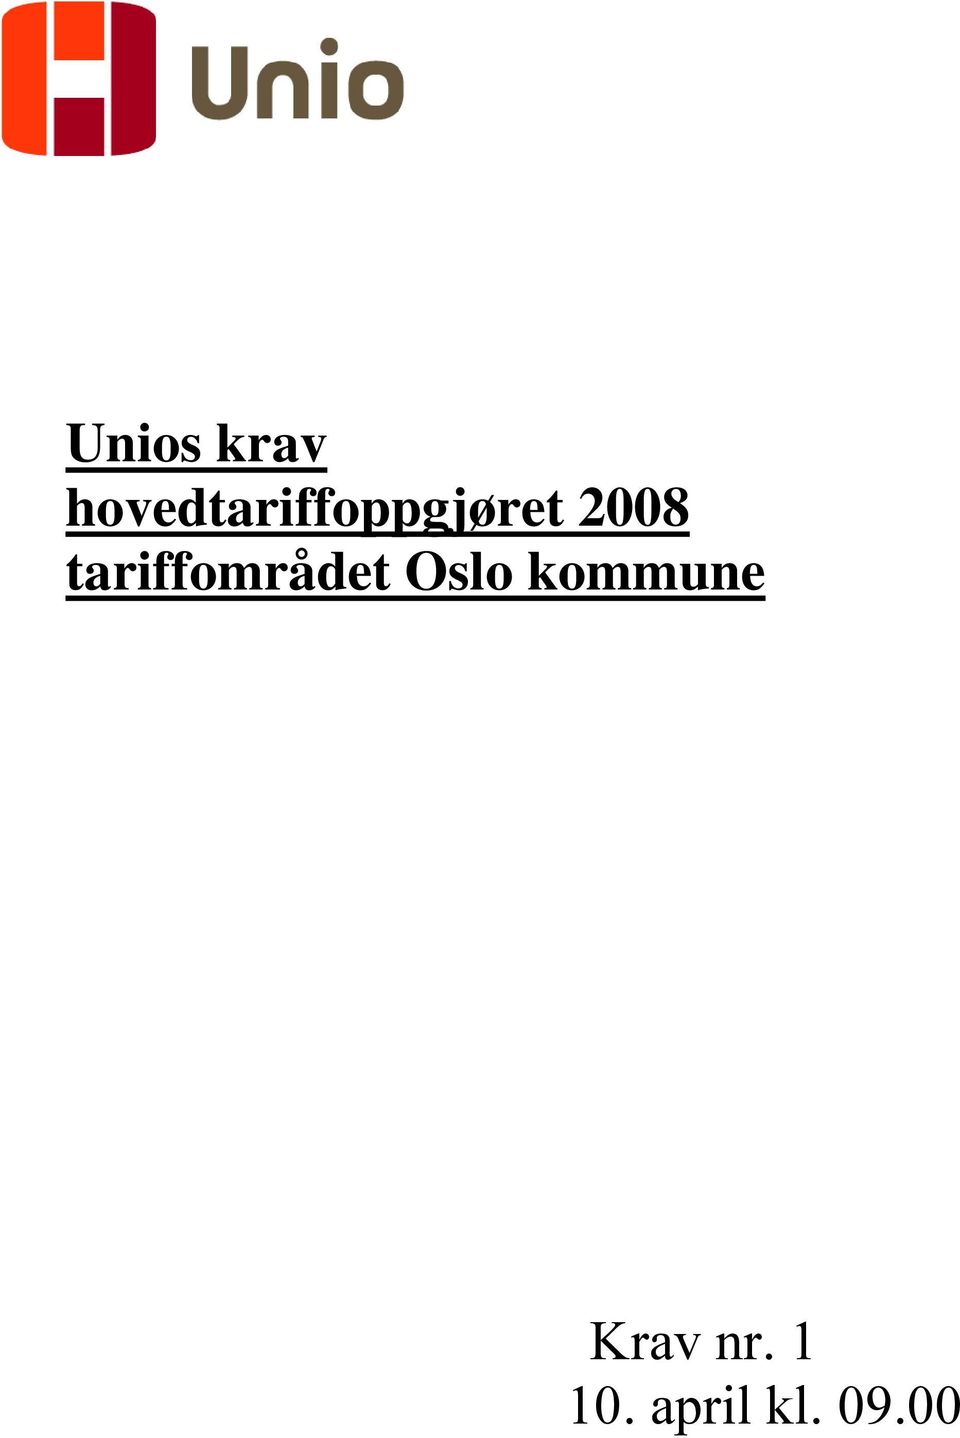 2008 tariffområdet Oslo